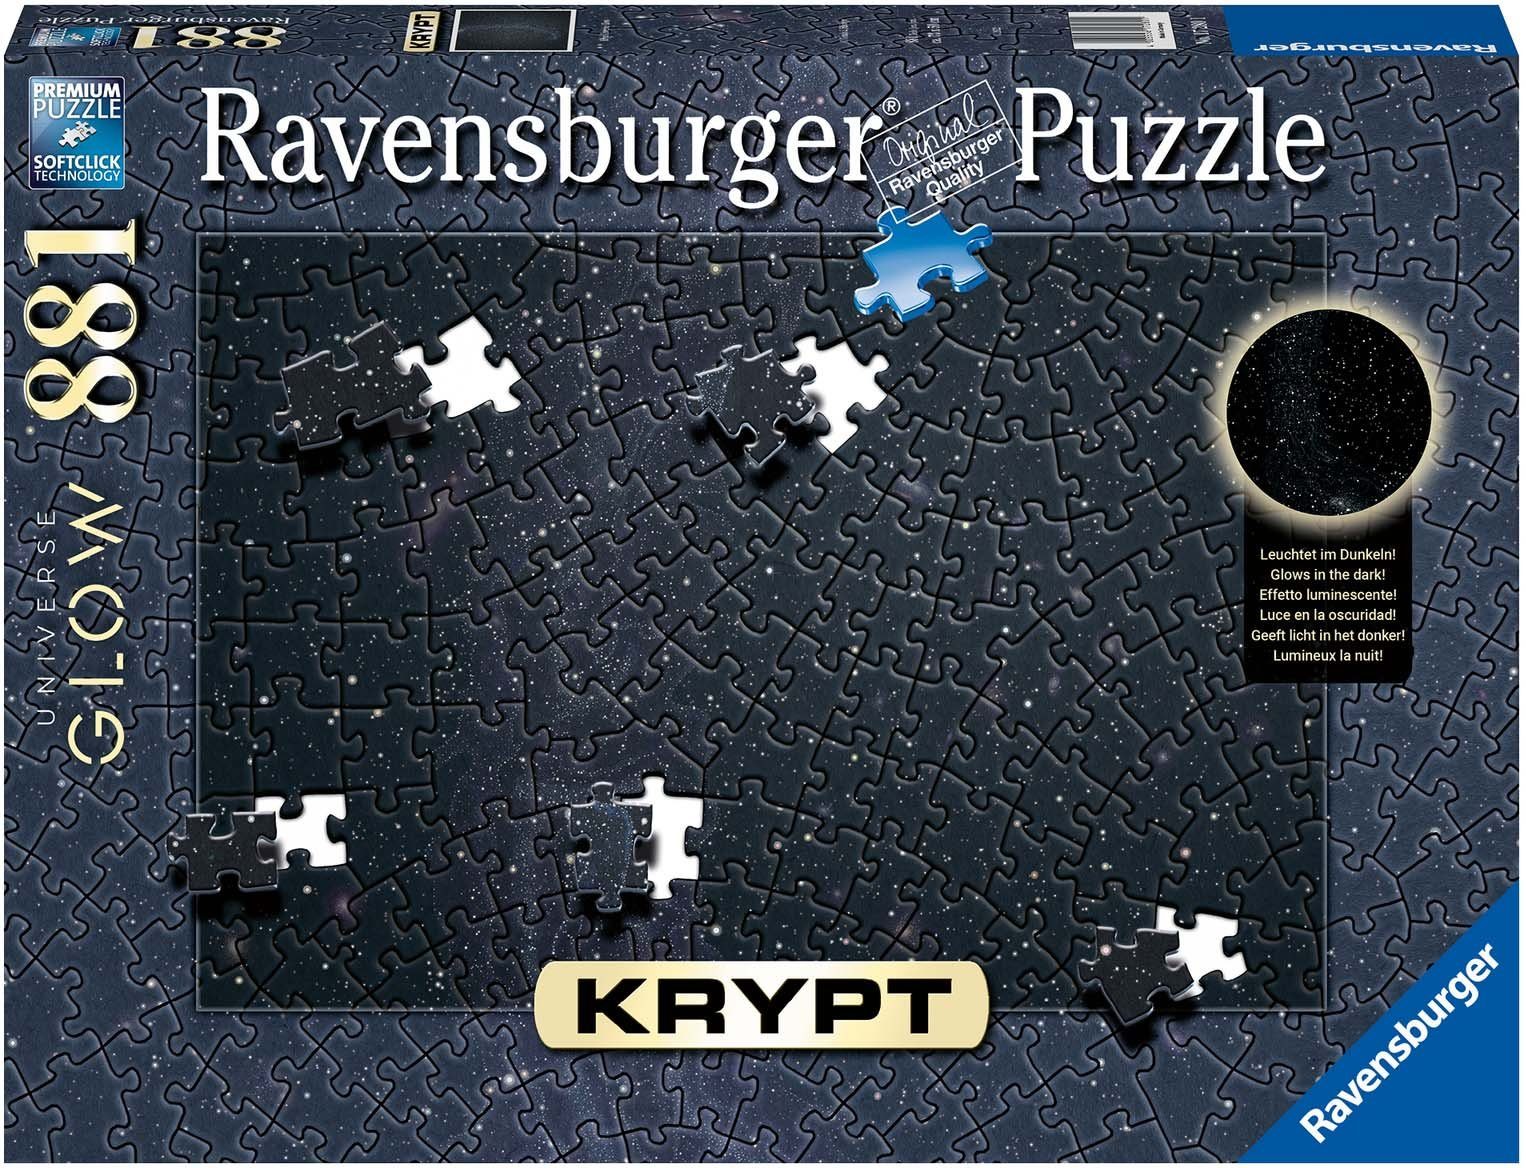 Ravensburger Puzzle Krypt - Made Germany, in Universe Glow, Puzzleteile, weltweit - schützt 881 Wald FSC®